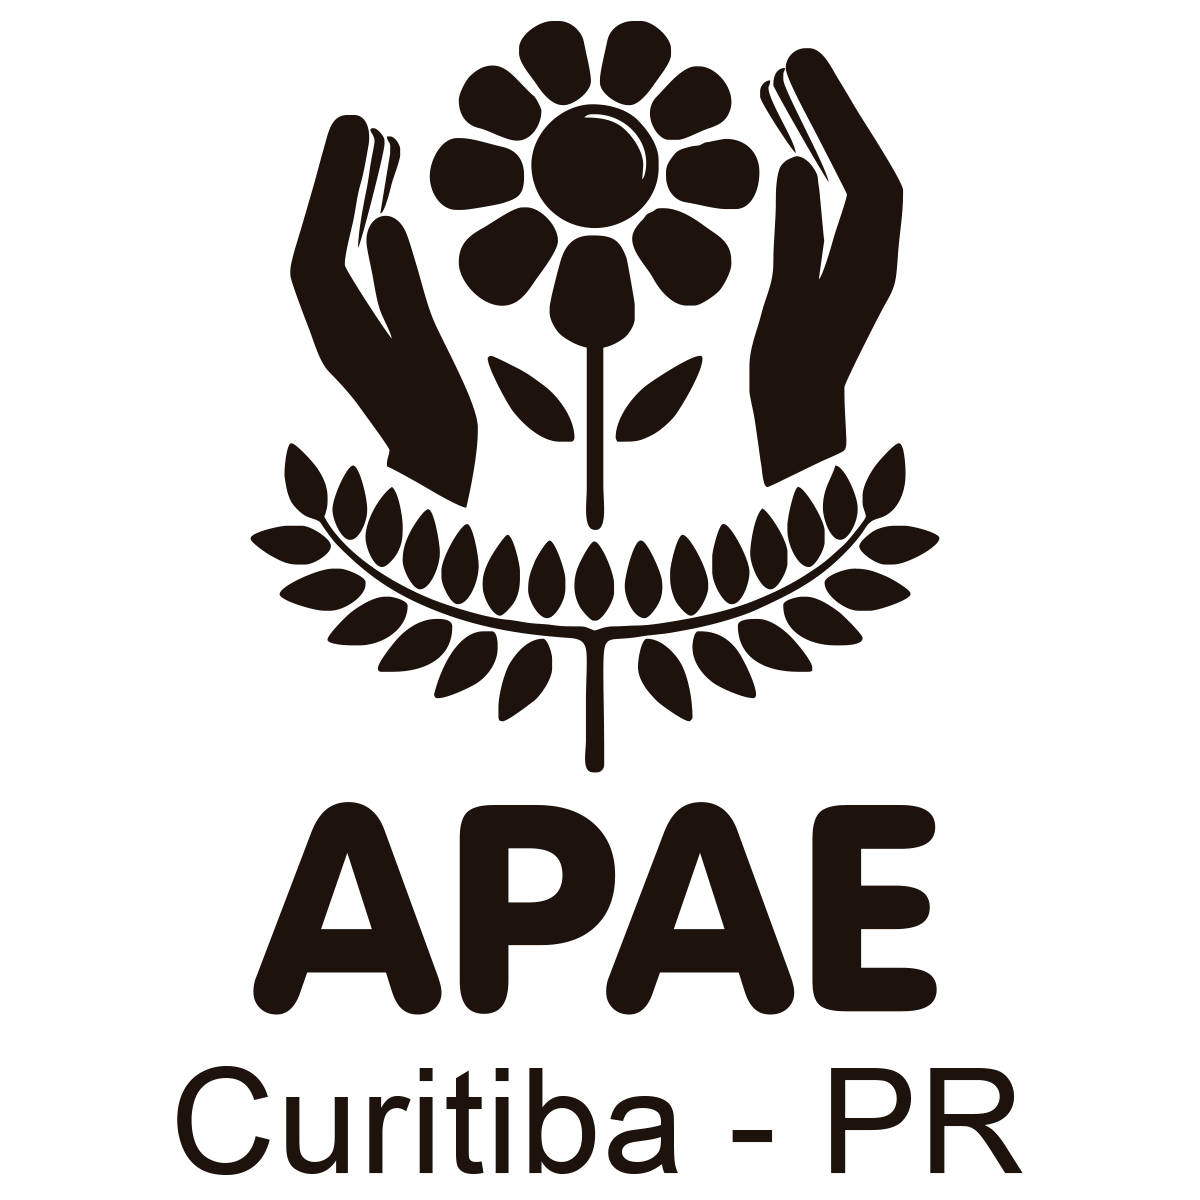 Lei assegura às pessoas com deficiência 2% dos cargos administrativos em Curitiba